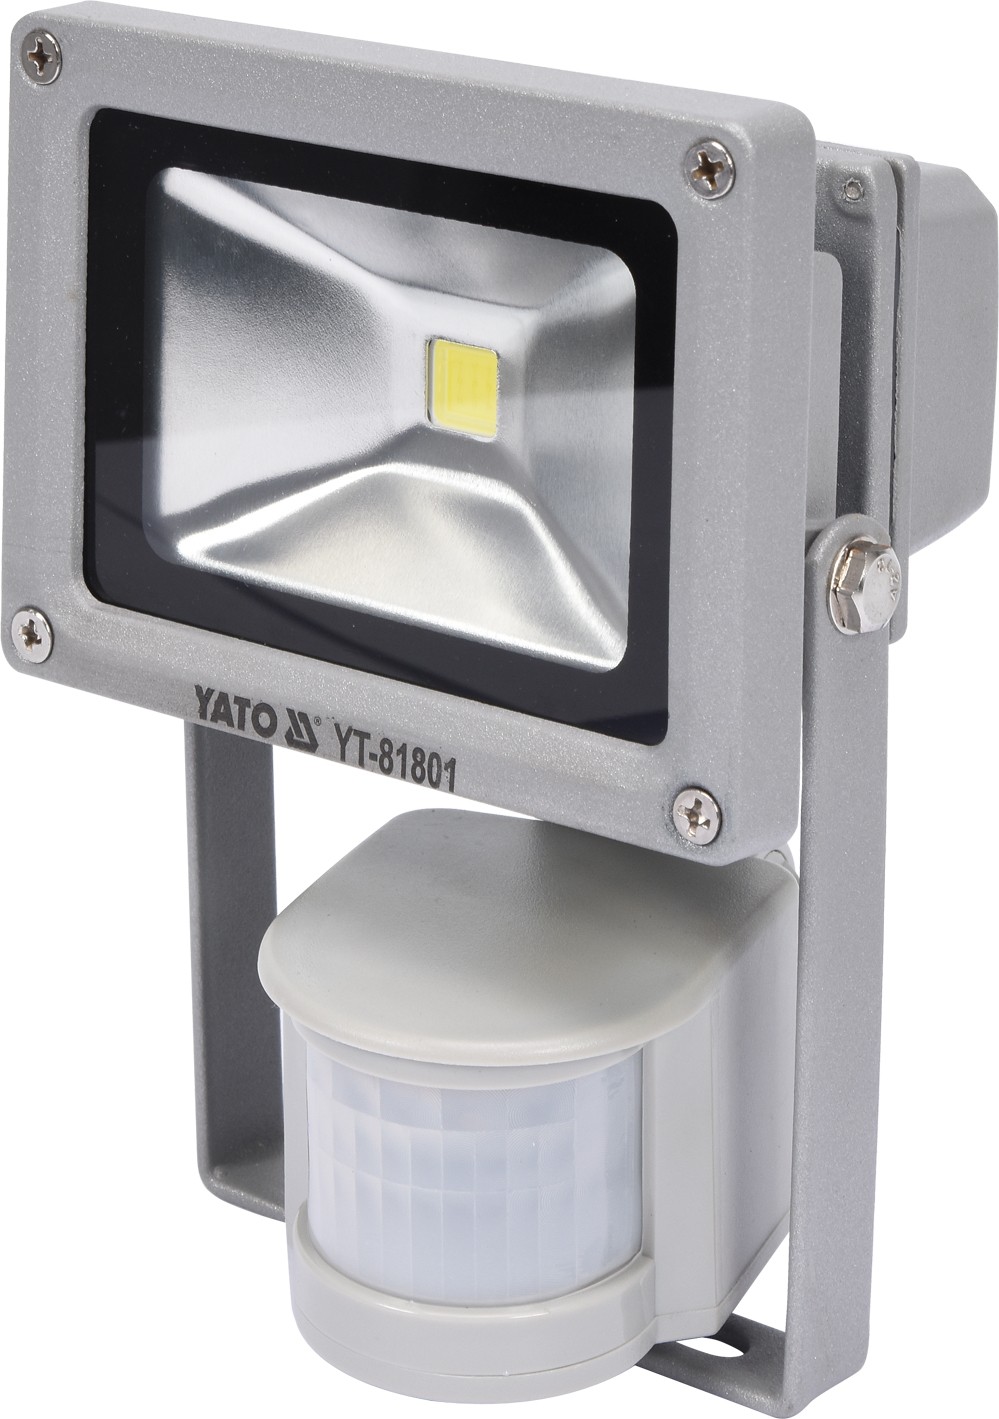 Fotografie Reflektor s vysoce svítivou COB LED, 10W, 700lm, IP44, pohyb. senzor